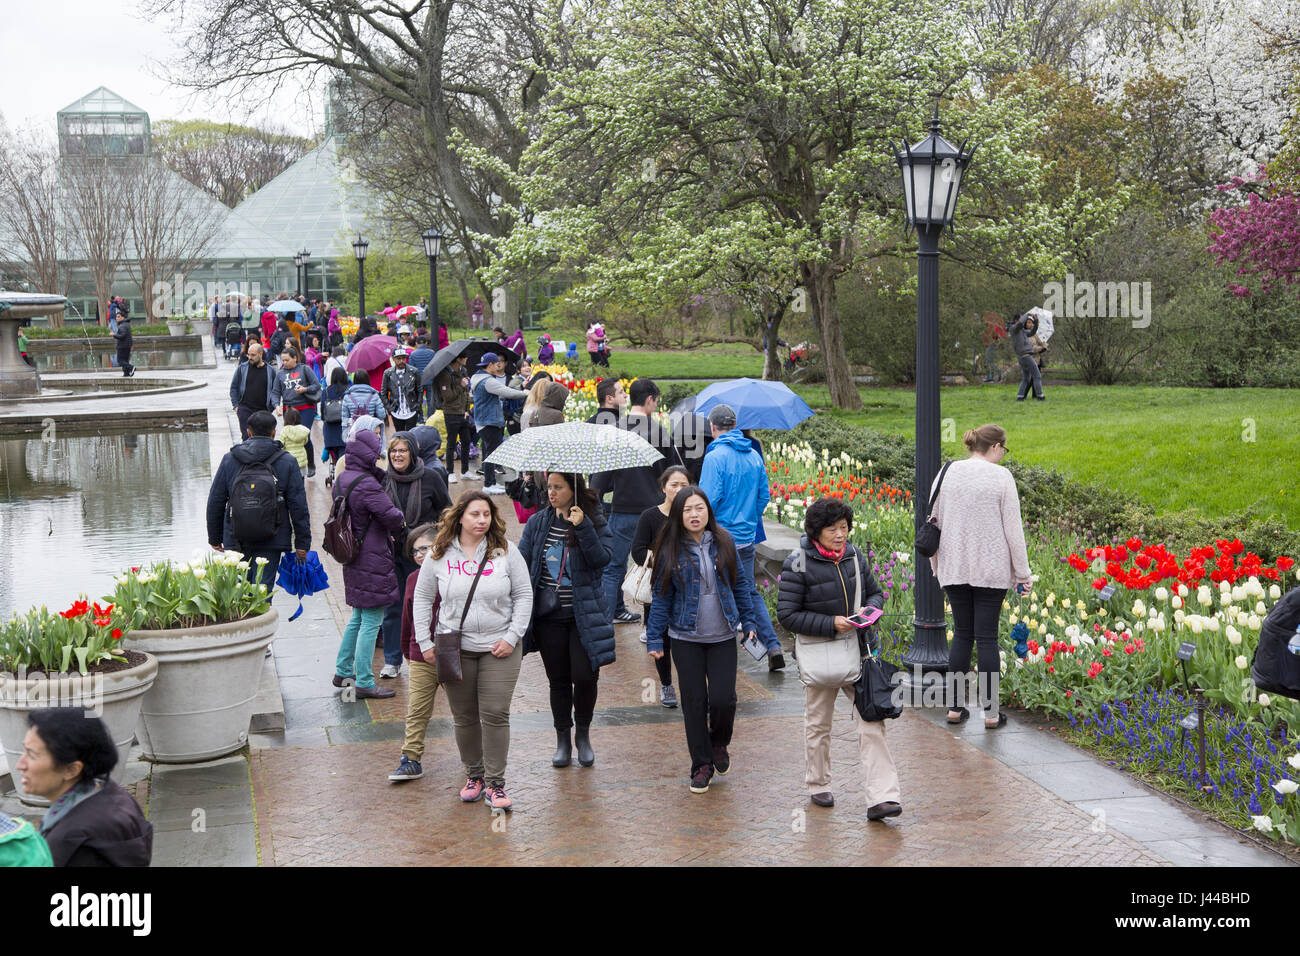 Selbst der Regen hört nicht auf Blumenliebhaber der Brooklyn Botanic Garden im Frühjahr in Brooklyn, New York zu besuchen. Stockfoto